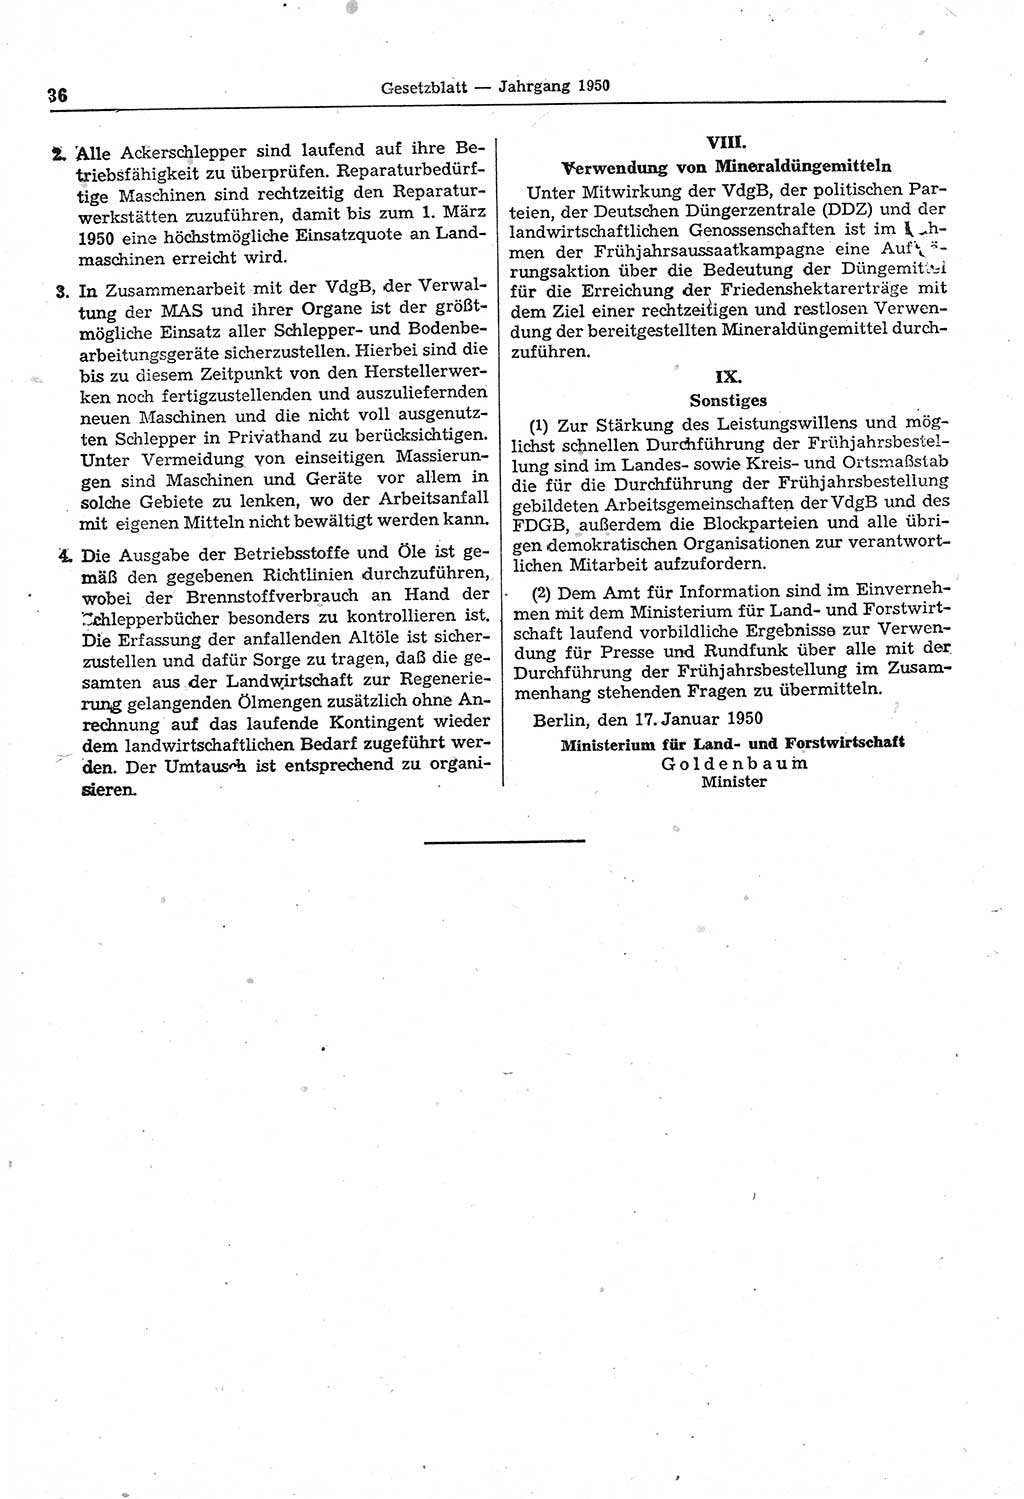 Gesetzblatt (GBl.) der Deutschen Demokratischen Republik (DDR) 1950, Seite 36 (GBl. DDR 1950, S. 36)